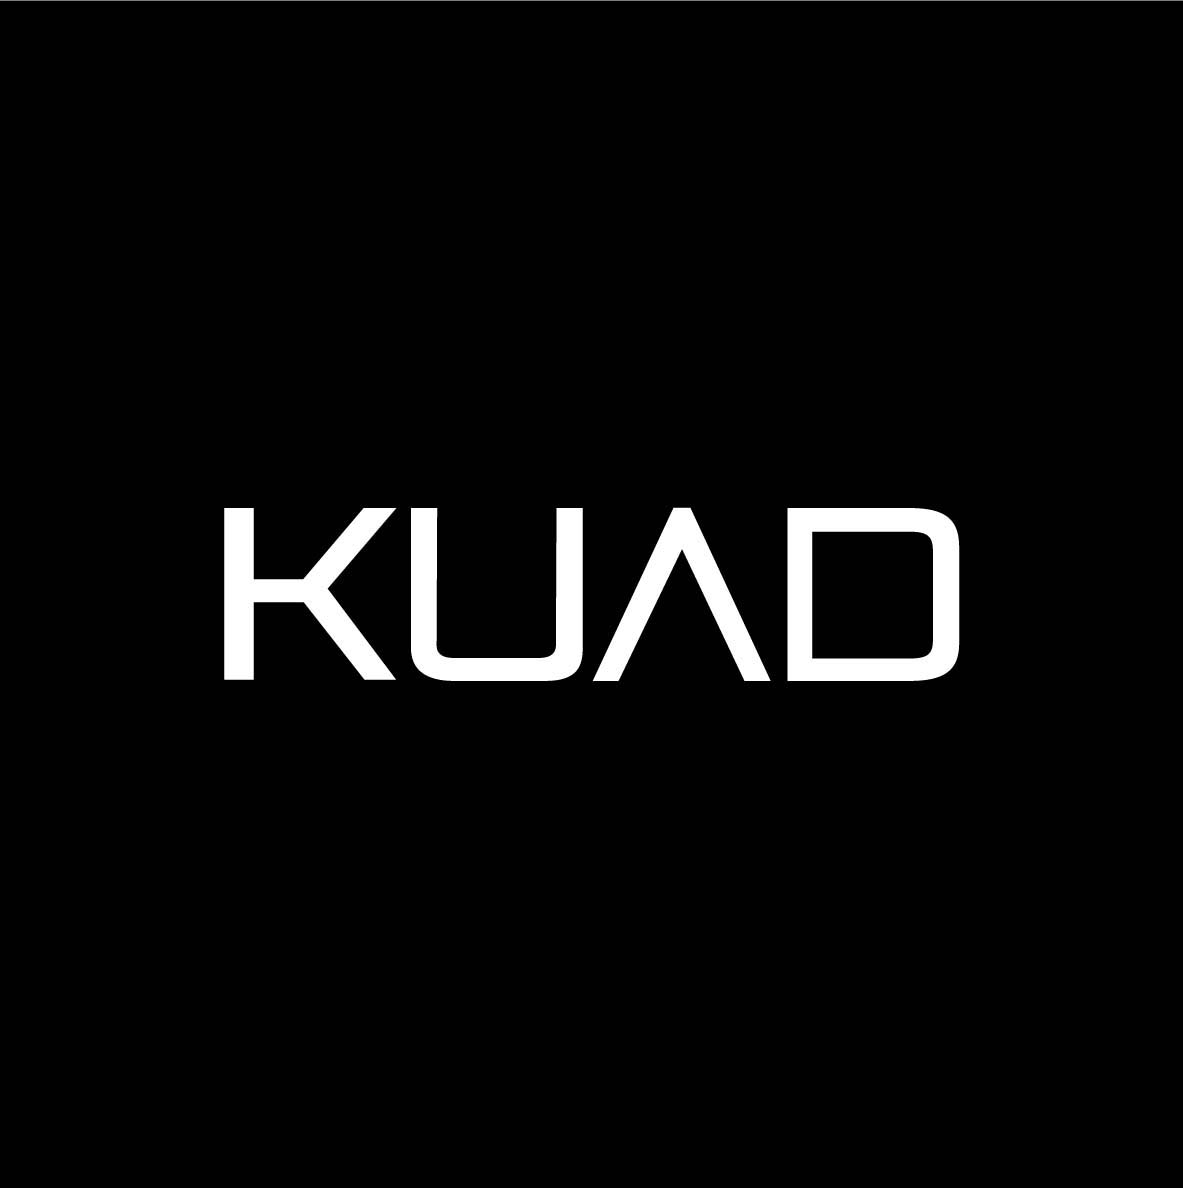 Kuad Gallery, logo (źródło: materiały prasowe organizatora)